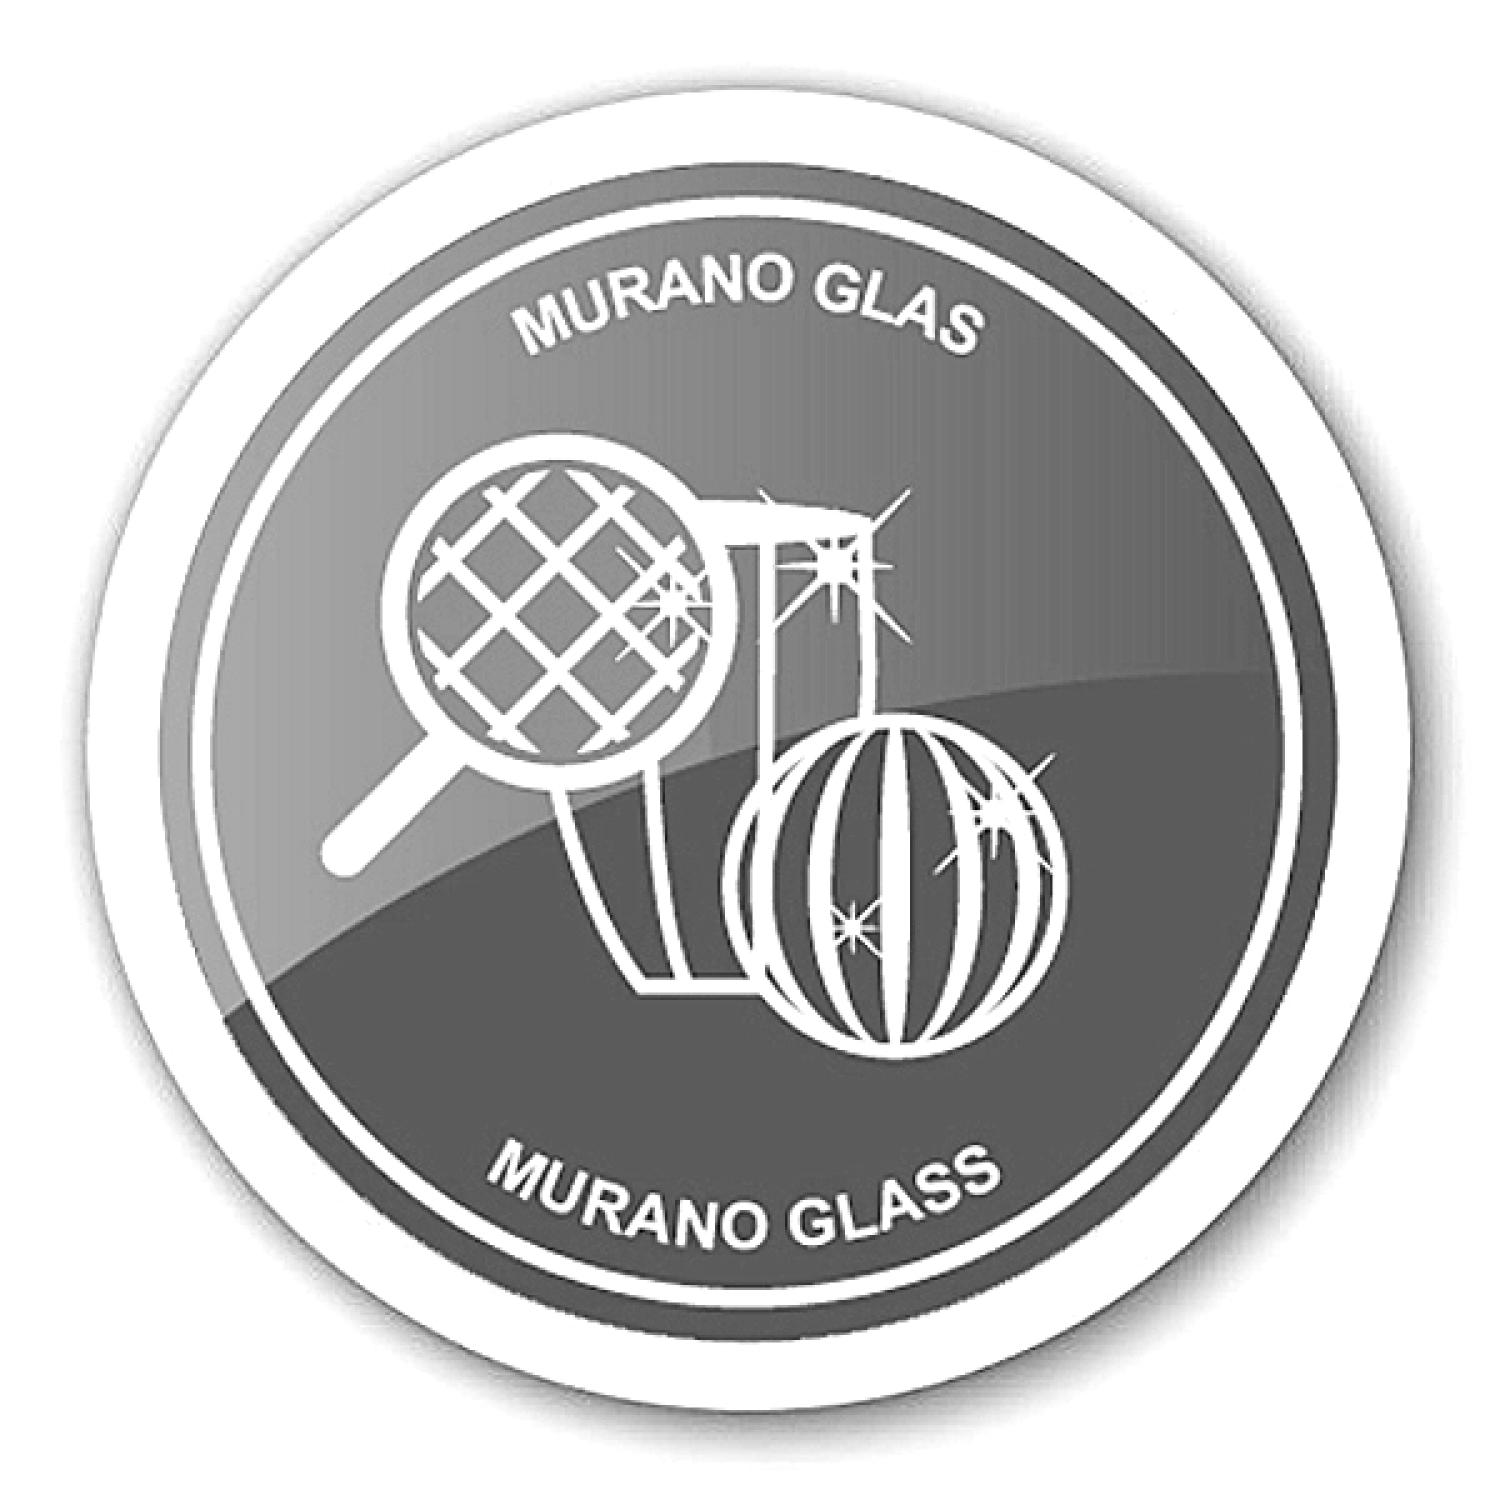 Der niedliche Frosch als Flaschenverschluß - Murano Glastechnik